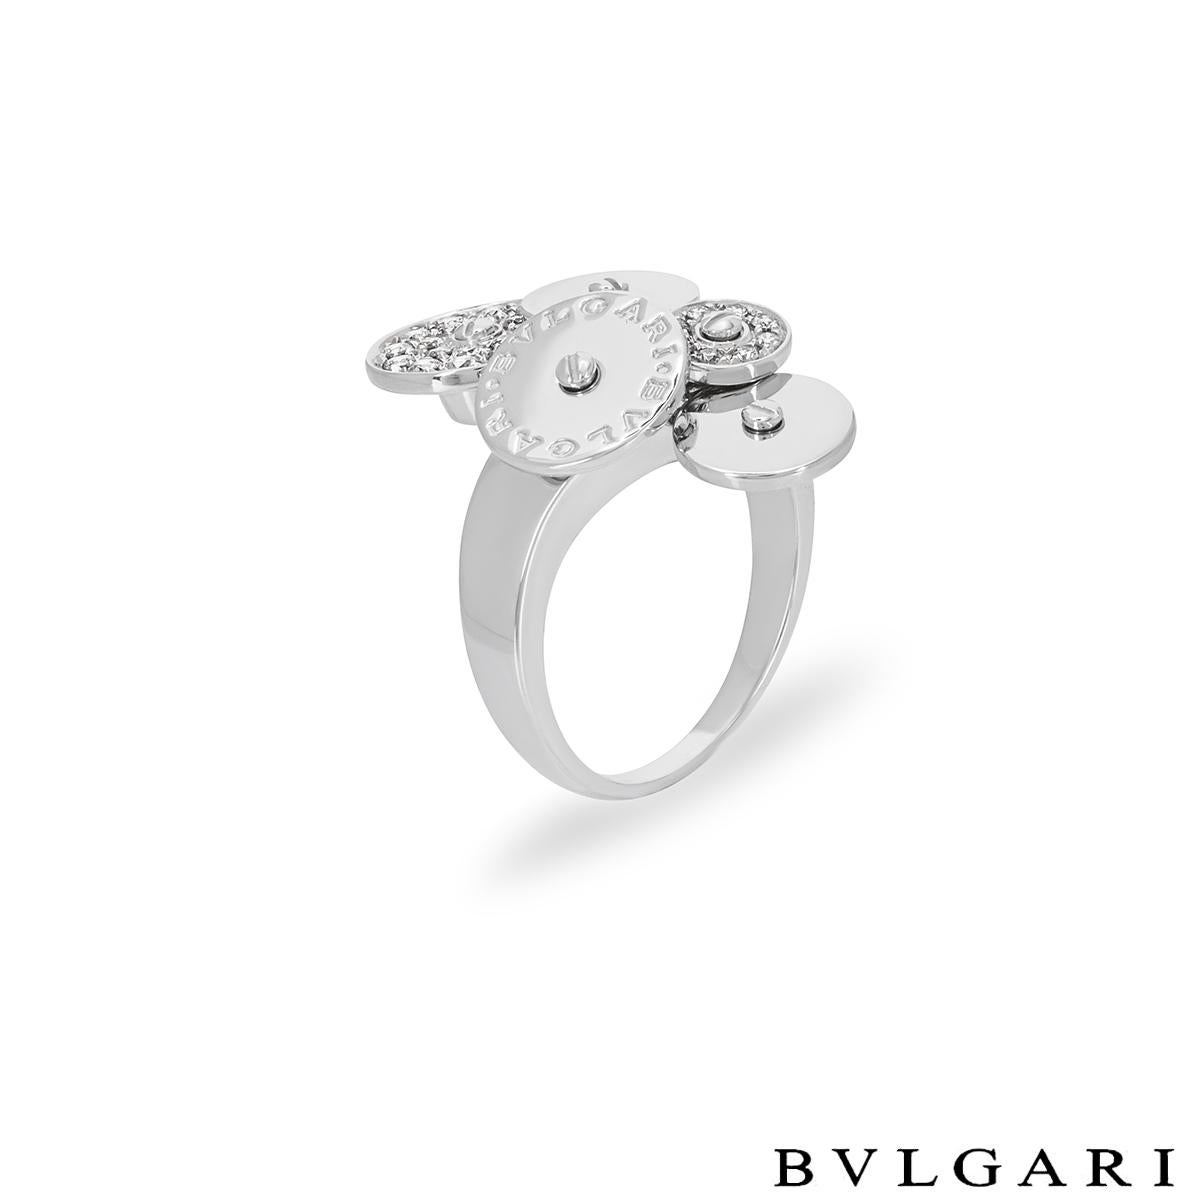 Une bague en diamant en or blanc 18 carats par Bvlgari de la collection Cicladi. L'anneau de robe est composé d'une grappe de 5 disques circulaires tournants, dont la taille alterne. L'un des disques est gravé du logo Bvlgari Bvlgari, deux des